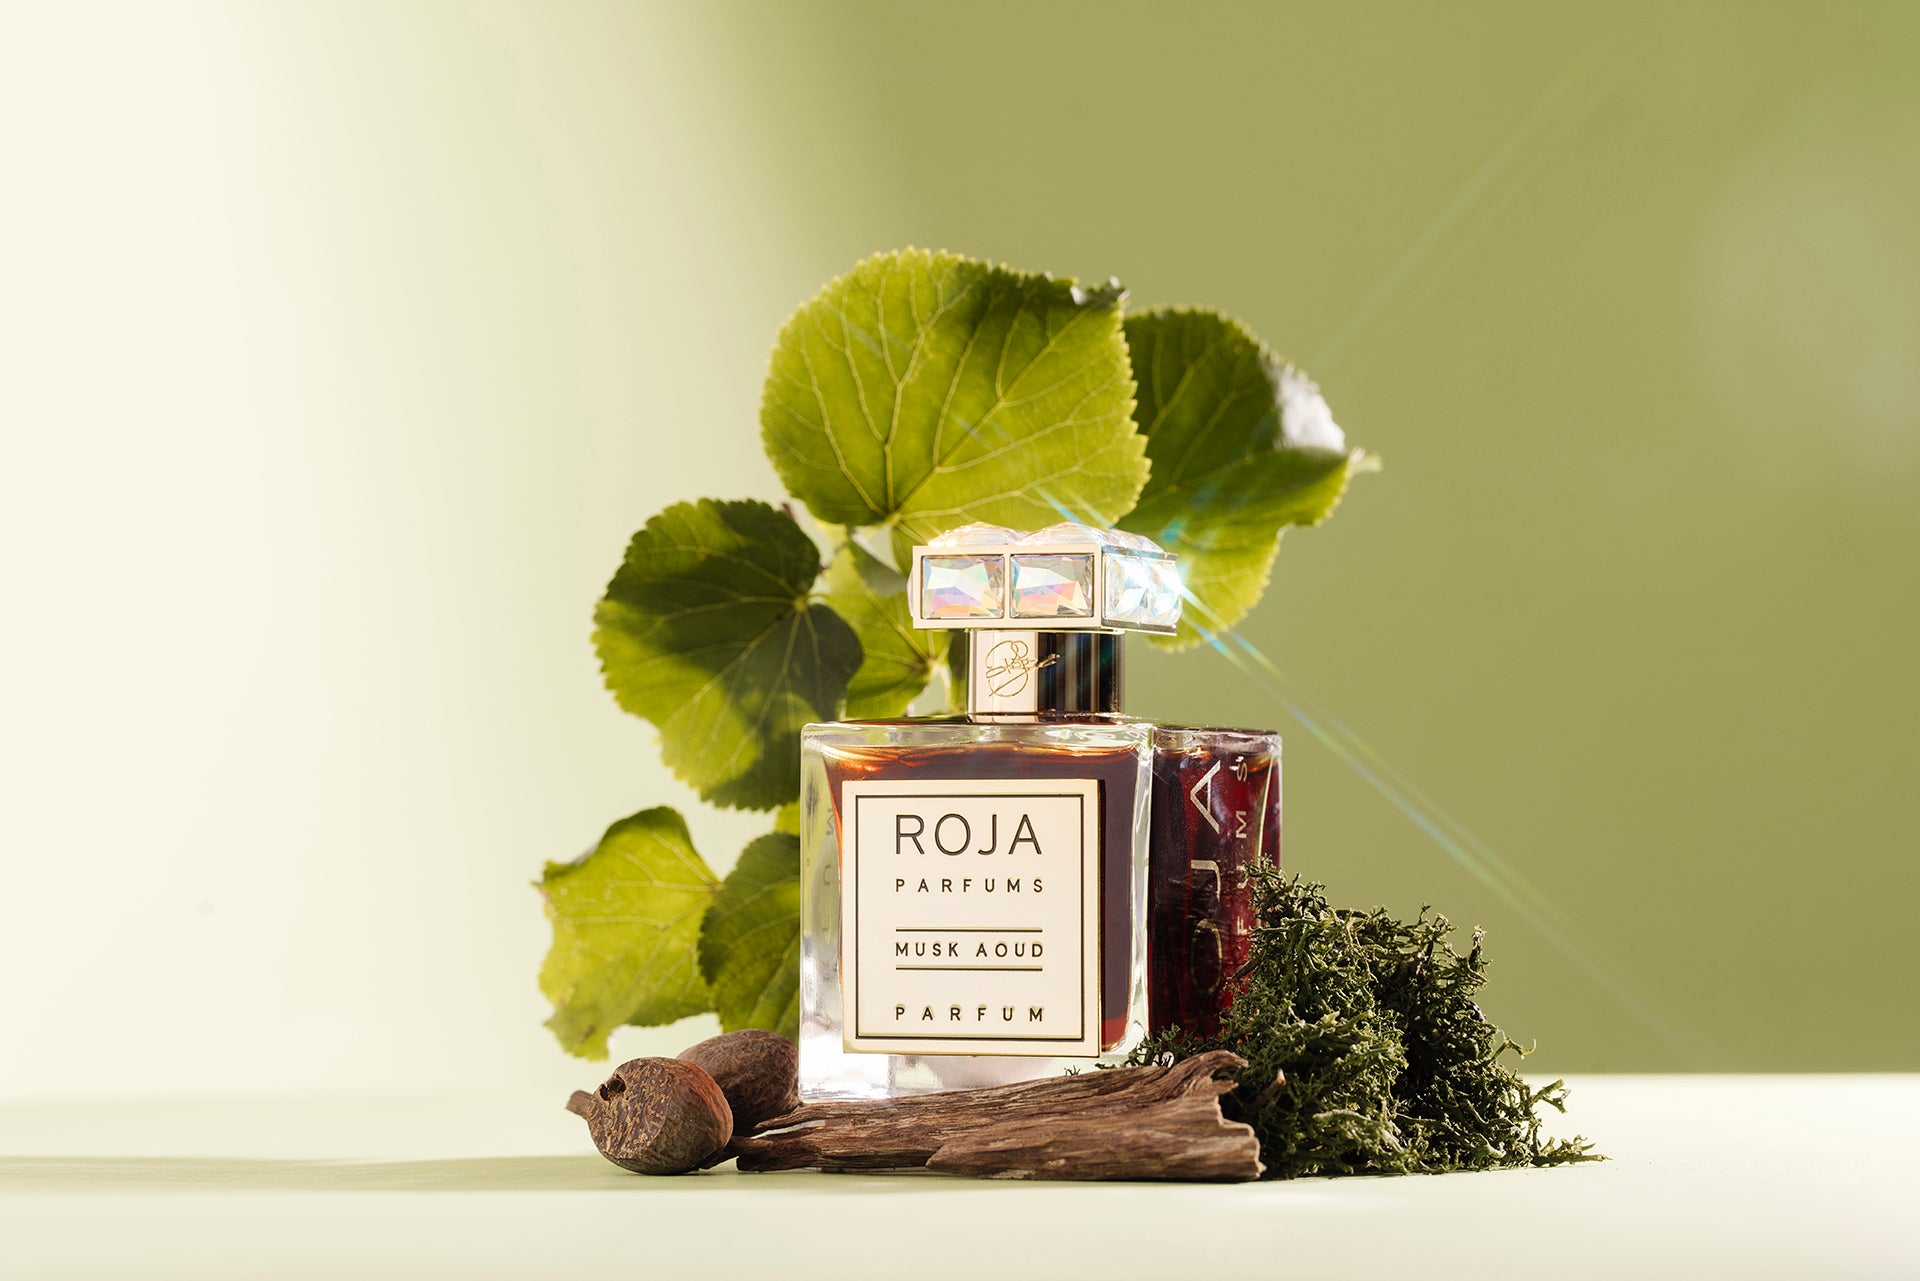 Roja Parfums Amber Aoud Parfum (100ml)